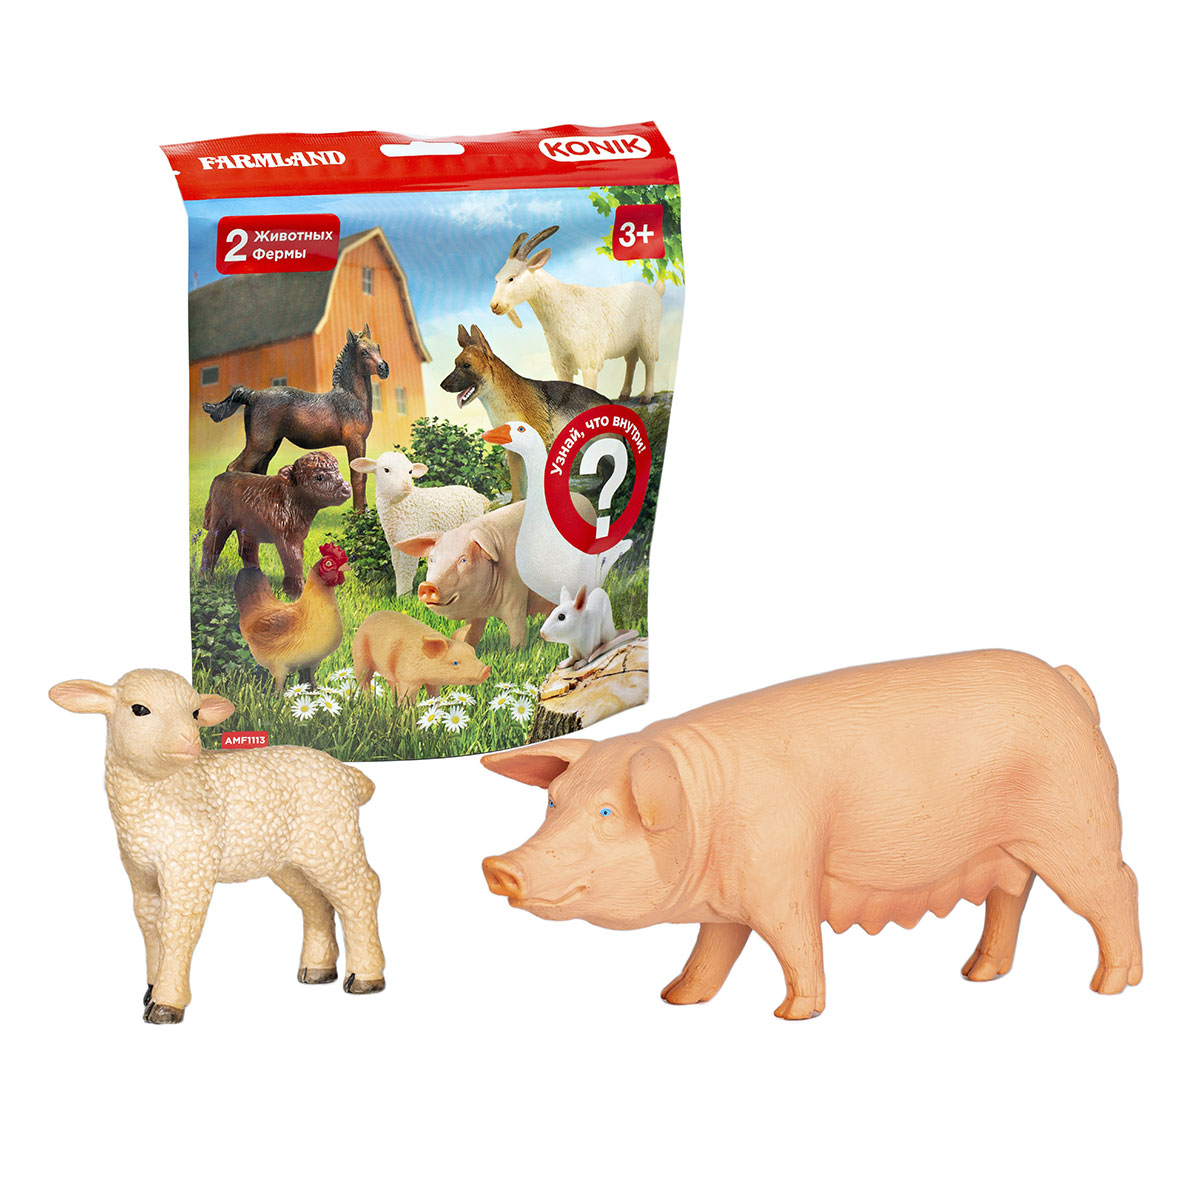 Пакетик-сюрприз KONIK Животные фермы, 2 шт konik пакетик сюрприз животные фермы 2 фигурки